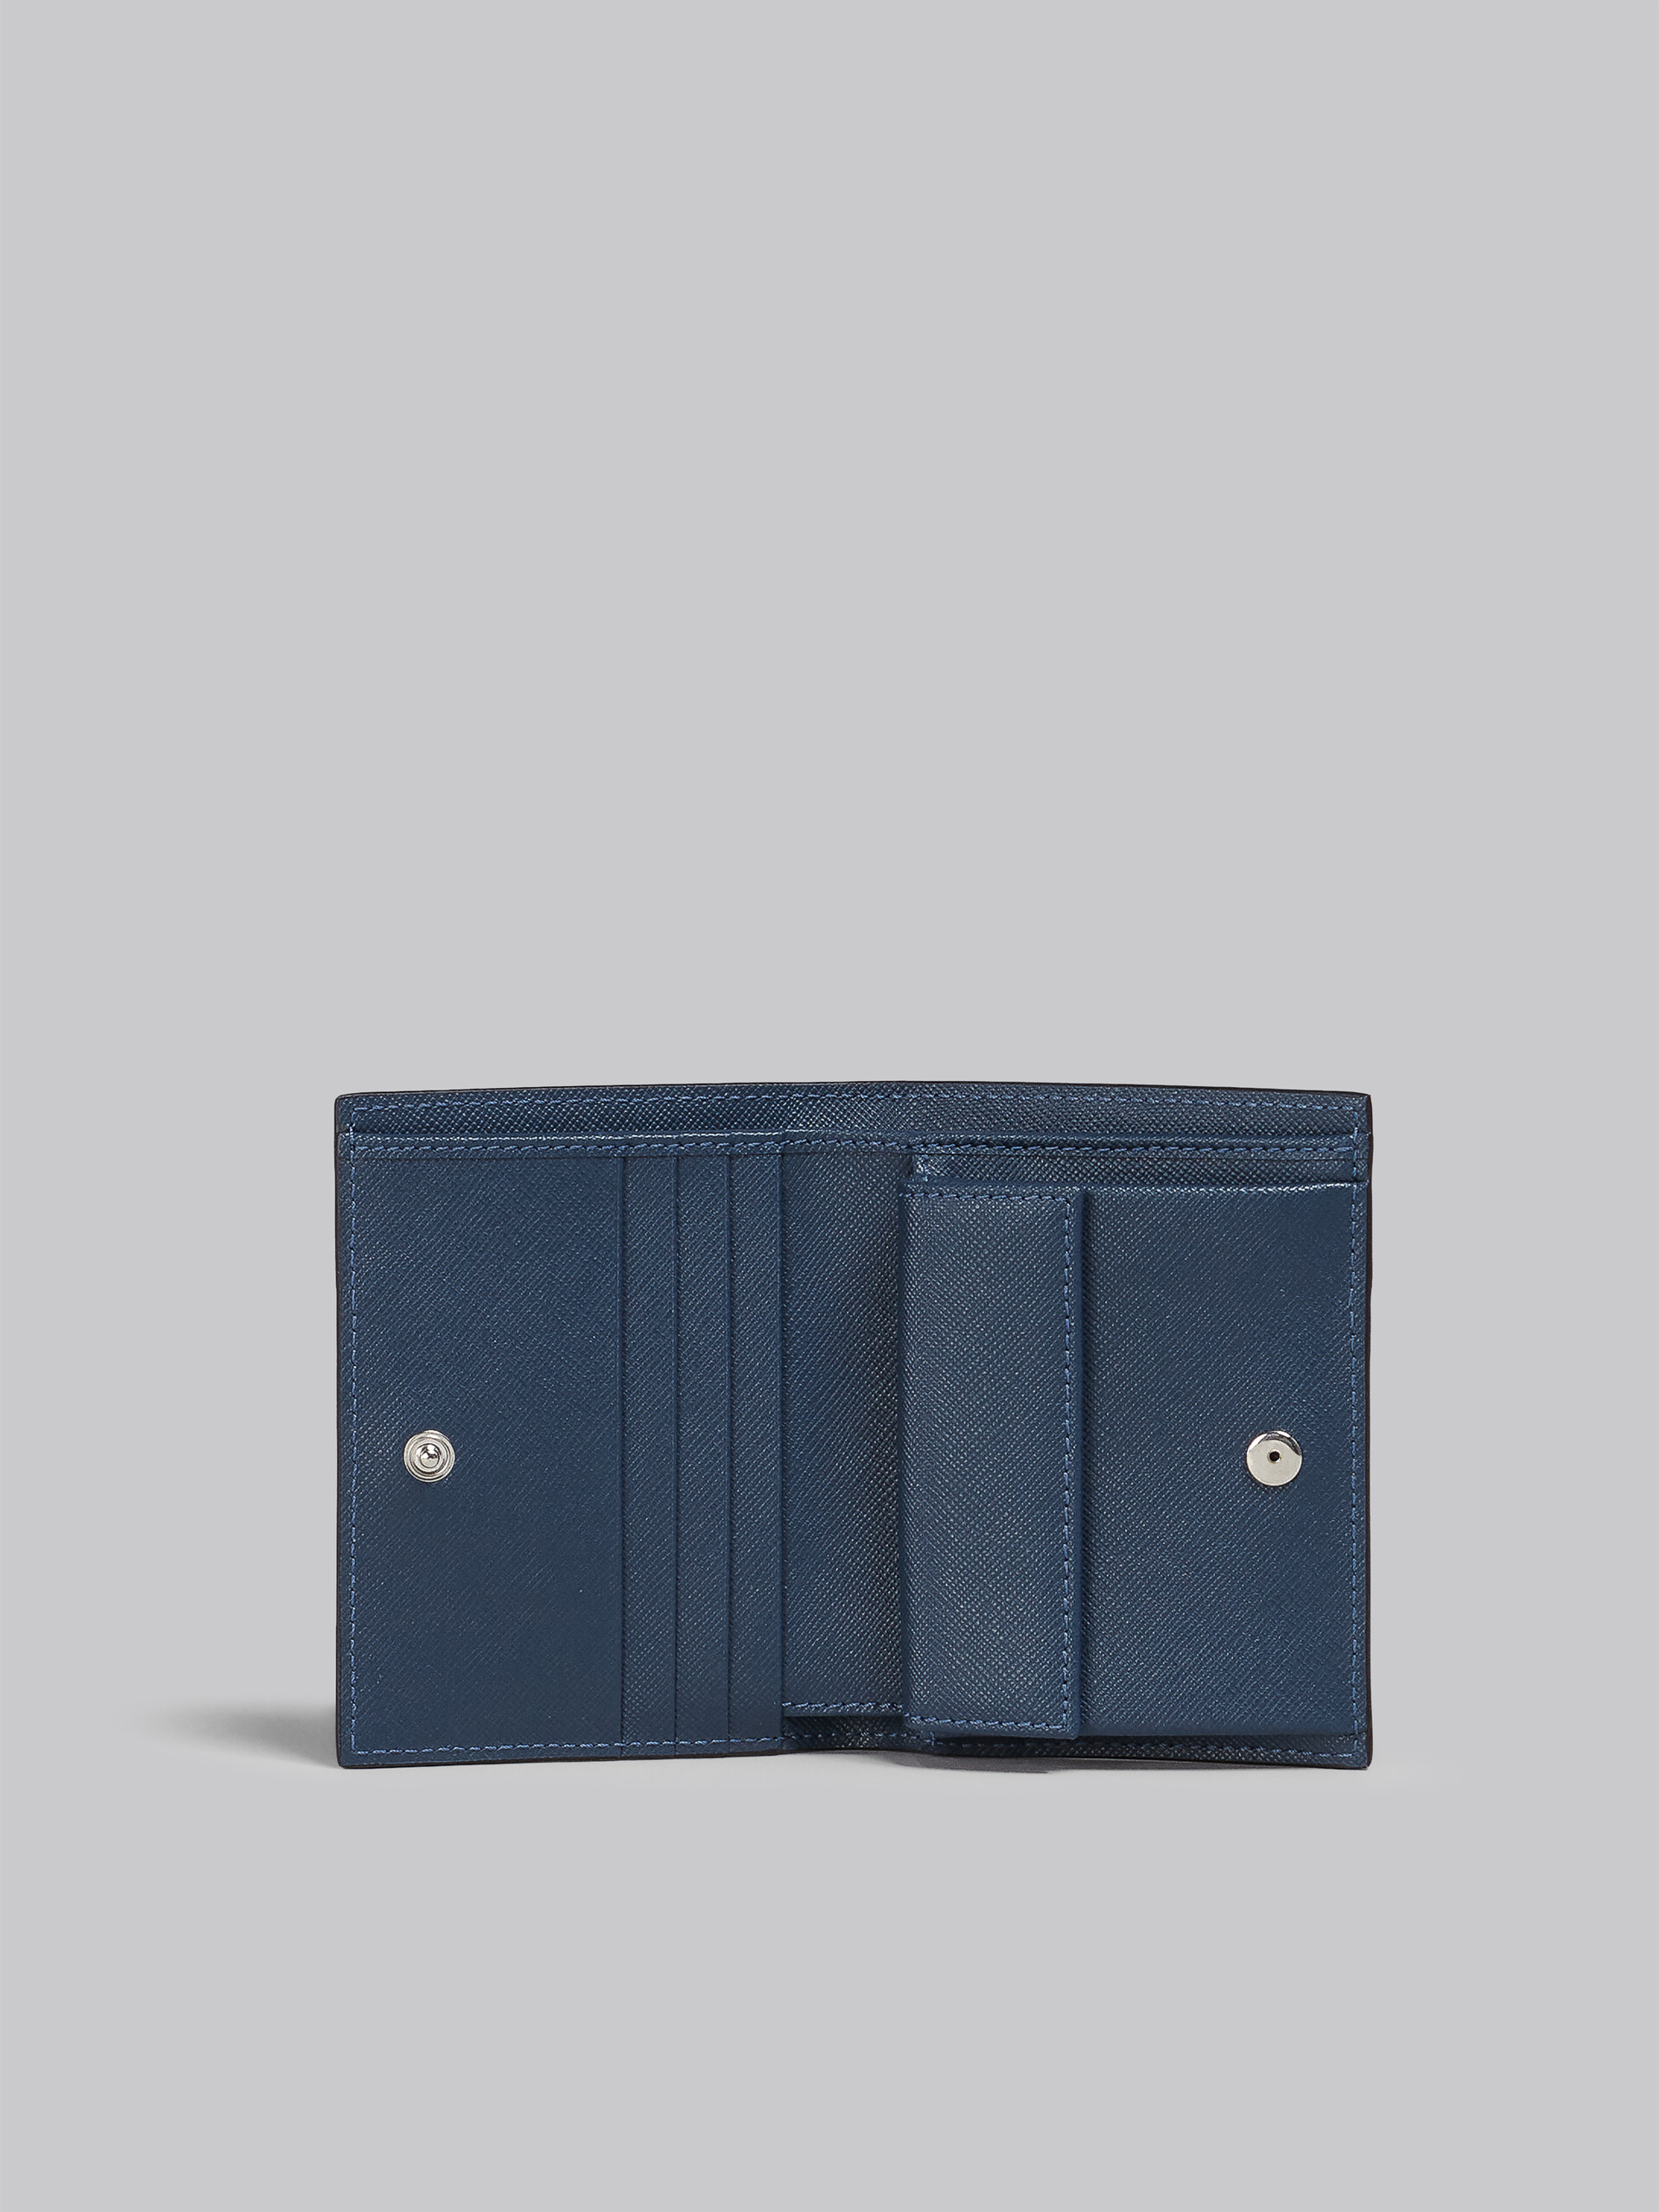 Black green blue leather bi-fold TRUNK wallet - Wallets - Image 2